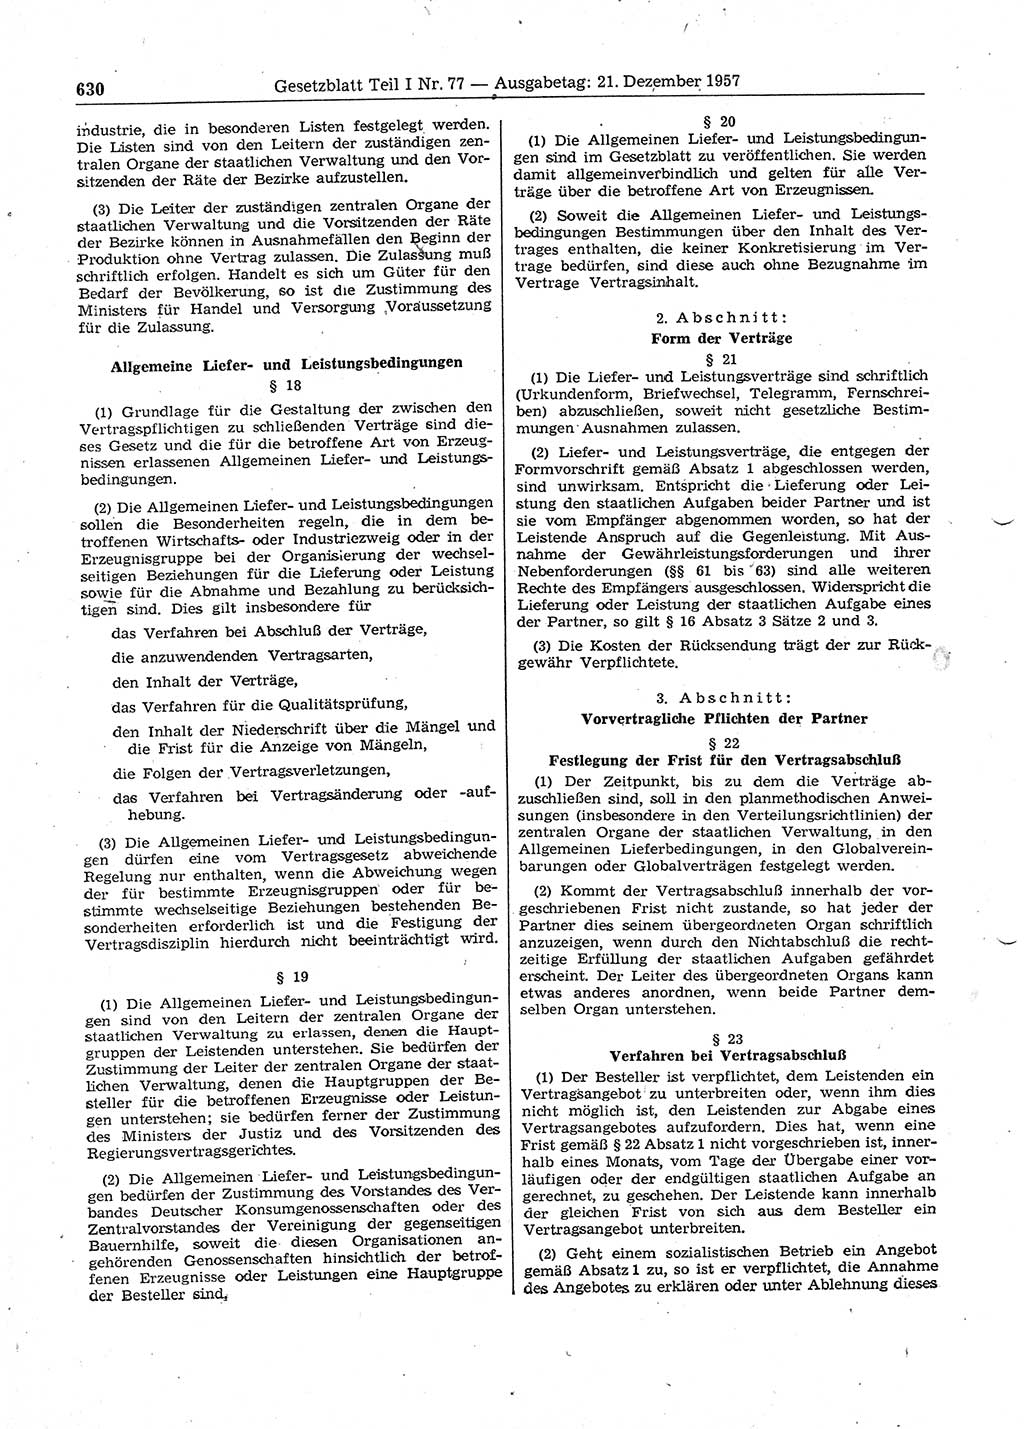 Gesetzblatt (GBl.) der Deutschen Demokratischen Republik (DDR) Teil Ⅰ 1957, Seite 630 (GBl. DDR Ⅰ 1957, S. 630)